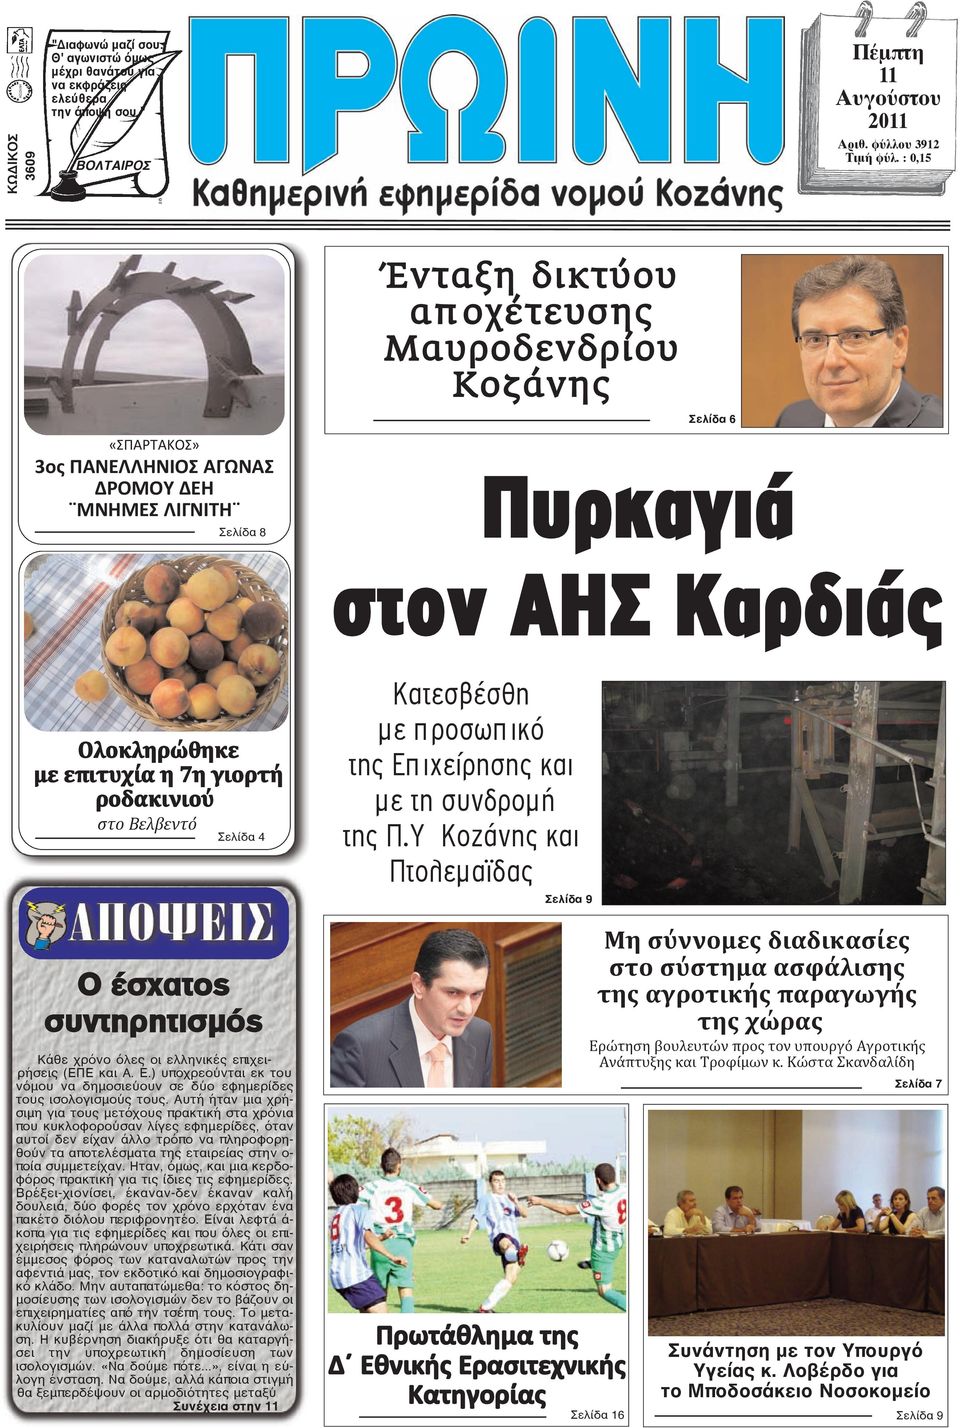 ροδακινιού στο Βελβεντό Σελίδα 4 Ο έσχατος συντηρητισμός Κάθε χρόνο όλες οι ελληνικές επιχειρήσεις (ΕΠΕ και Α. Ε.) υποχρεούνται εκ του νόμου να δημοσιεύουν σε δύο εφημερίδες τους ισολογισμούς τους.